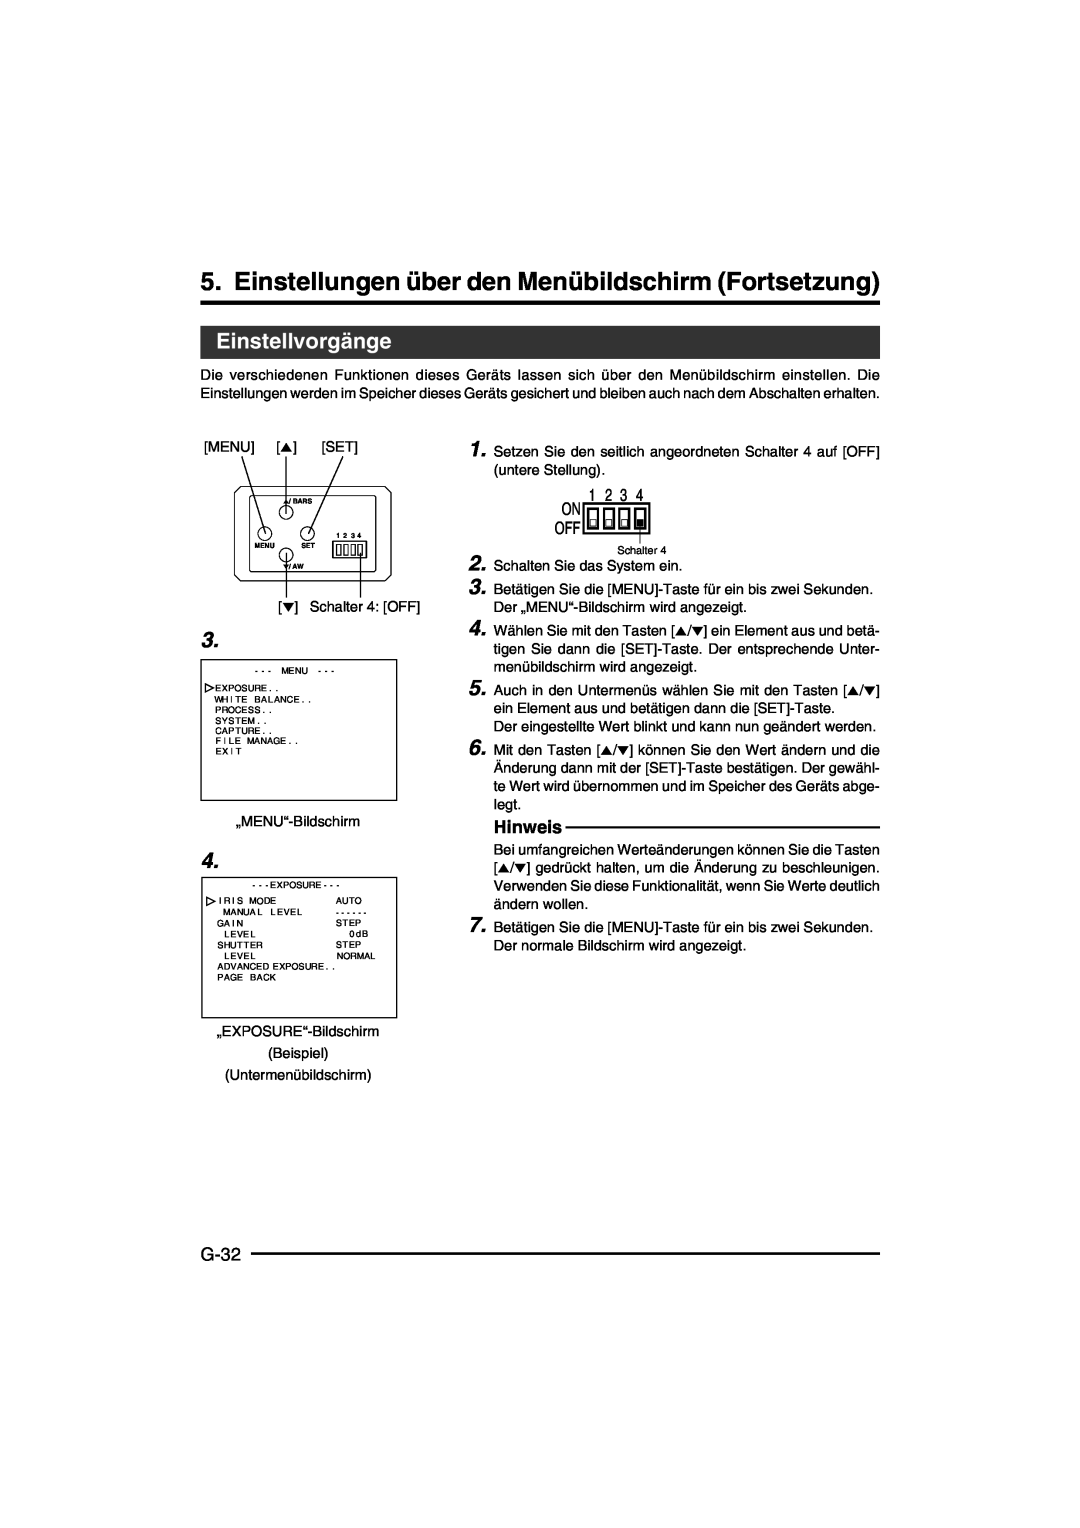 JVC KY-F550E instruction manual Einstellungen über den Menübildschirm Fortsetzung, Einstellvorgänge, G-32, Hinweis 